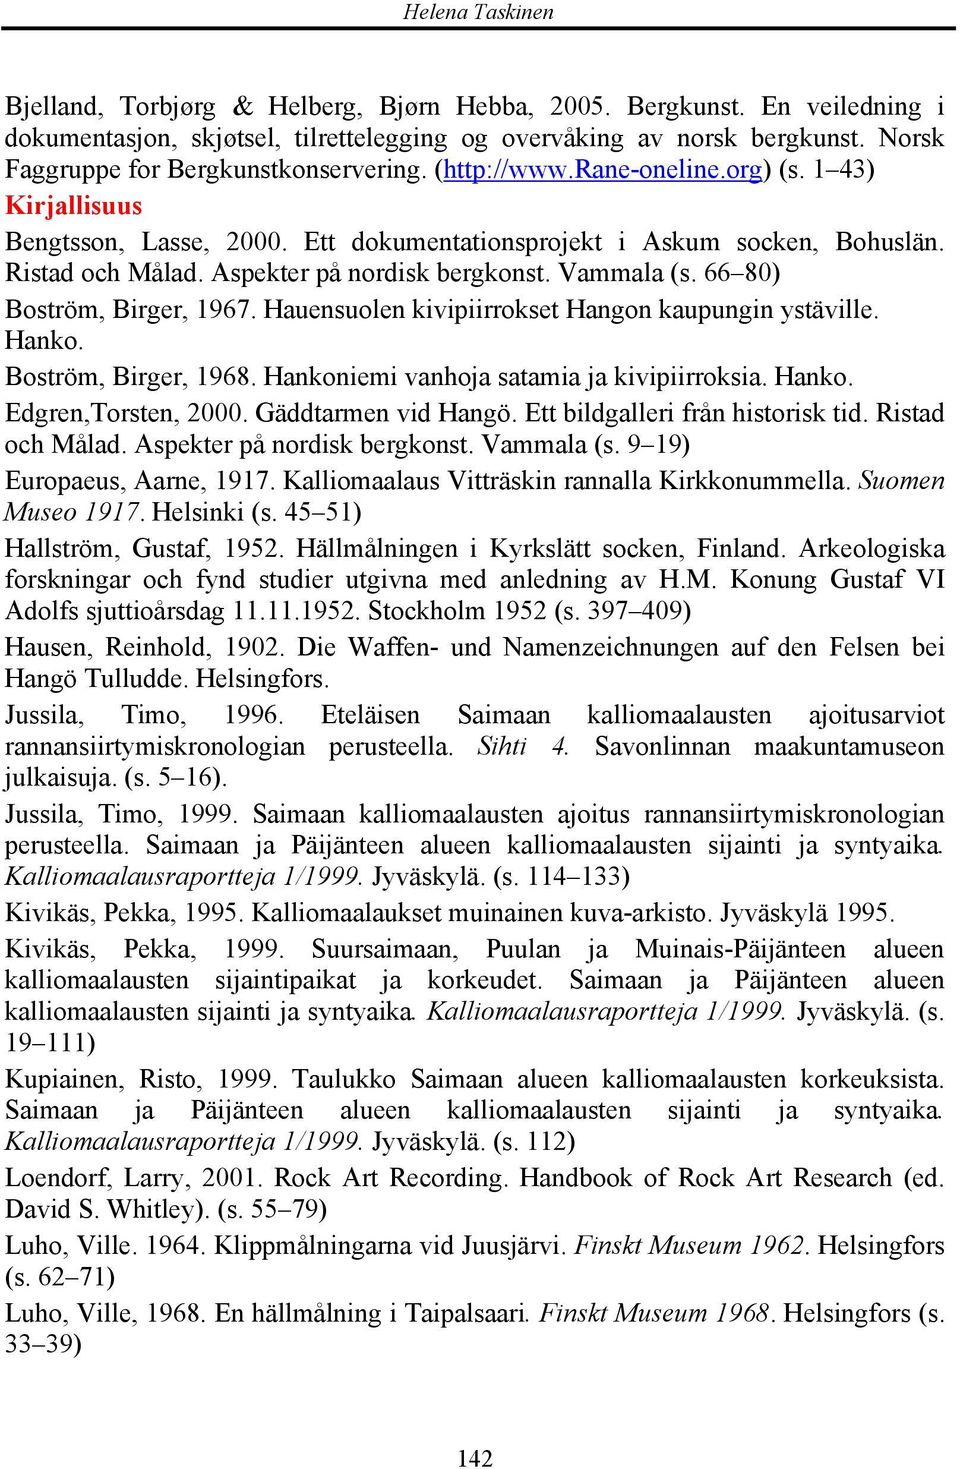 66 80) Boström, Birger, 1967. Hauensuolen kivipiirrokset Hangon kaupungin ystäville. Hanko. Boström, Birger, 1968. Hankoniemi vanhoja satamia ja kivipiirroksia. Hanko. Edgren,Torsten, 2000.